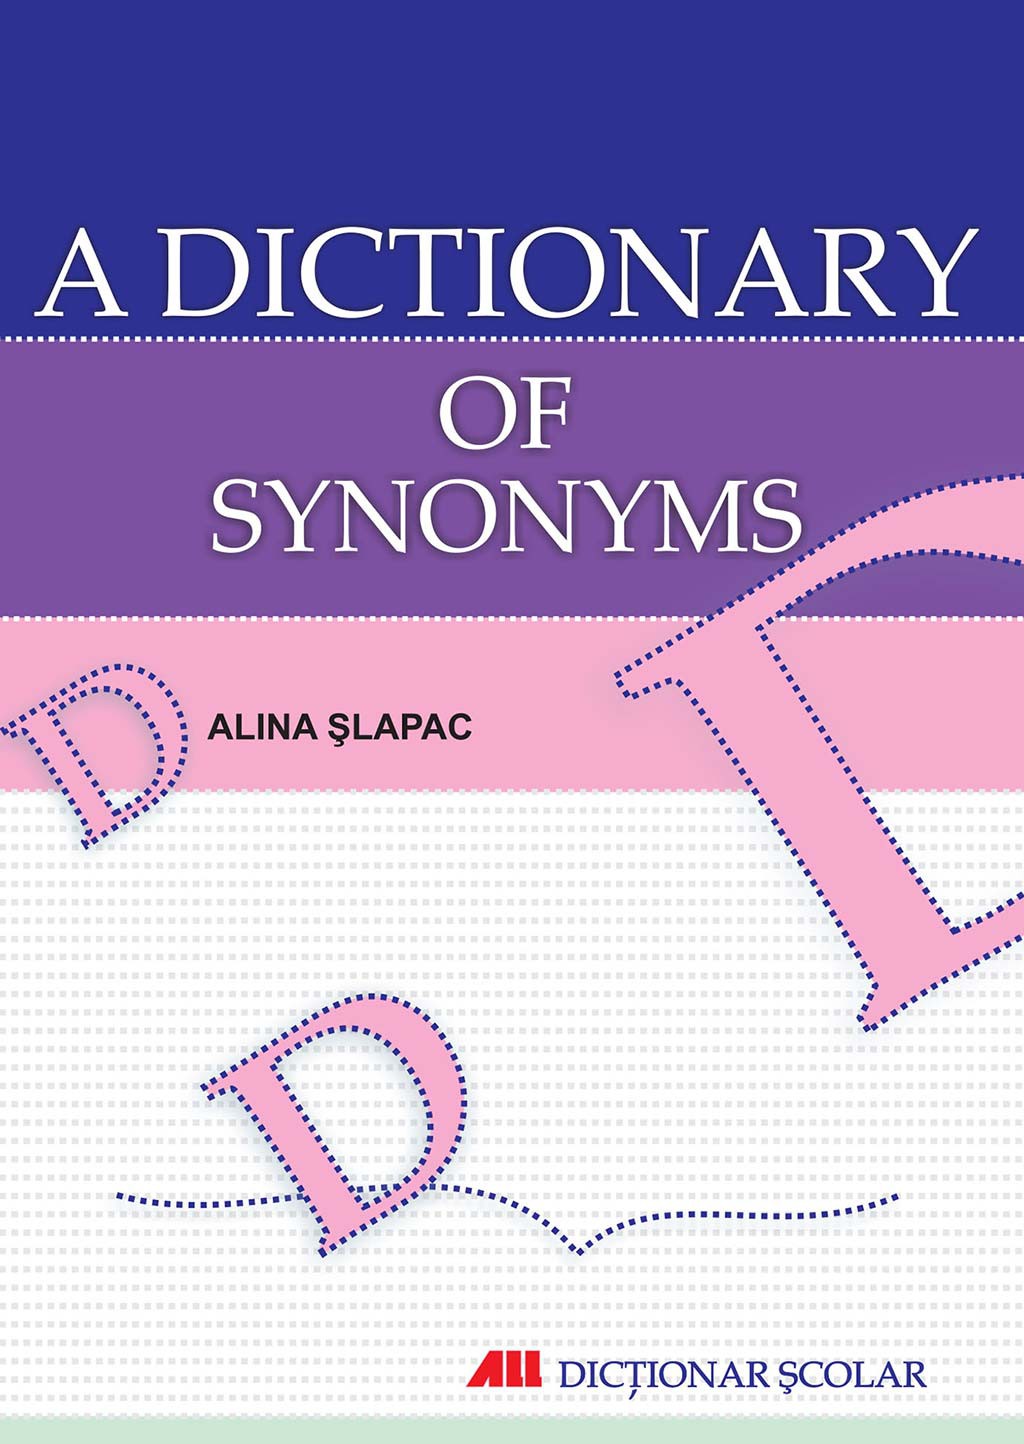 A dictionary of synonyms - Alina Slapac